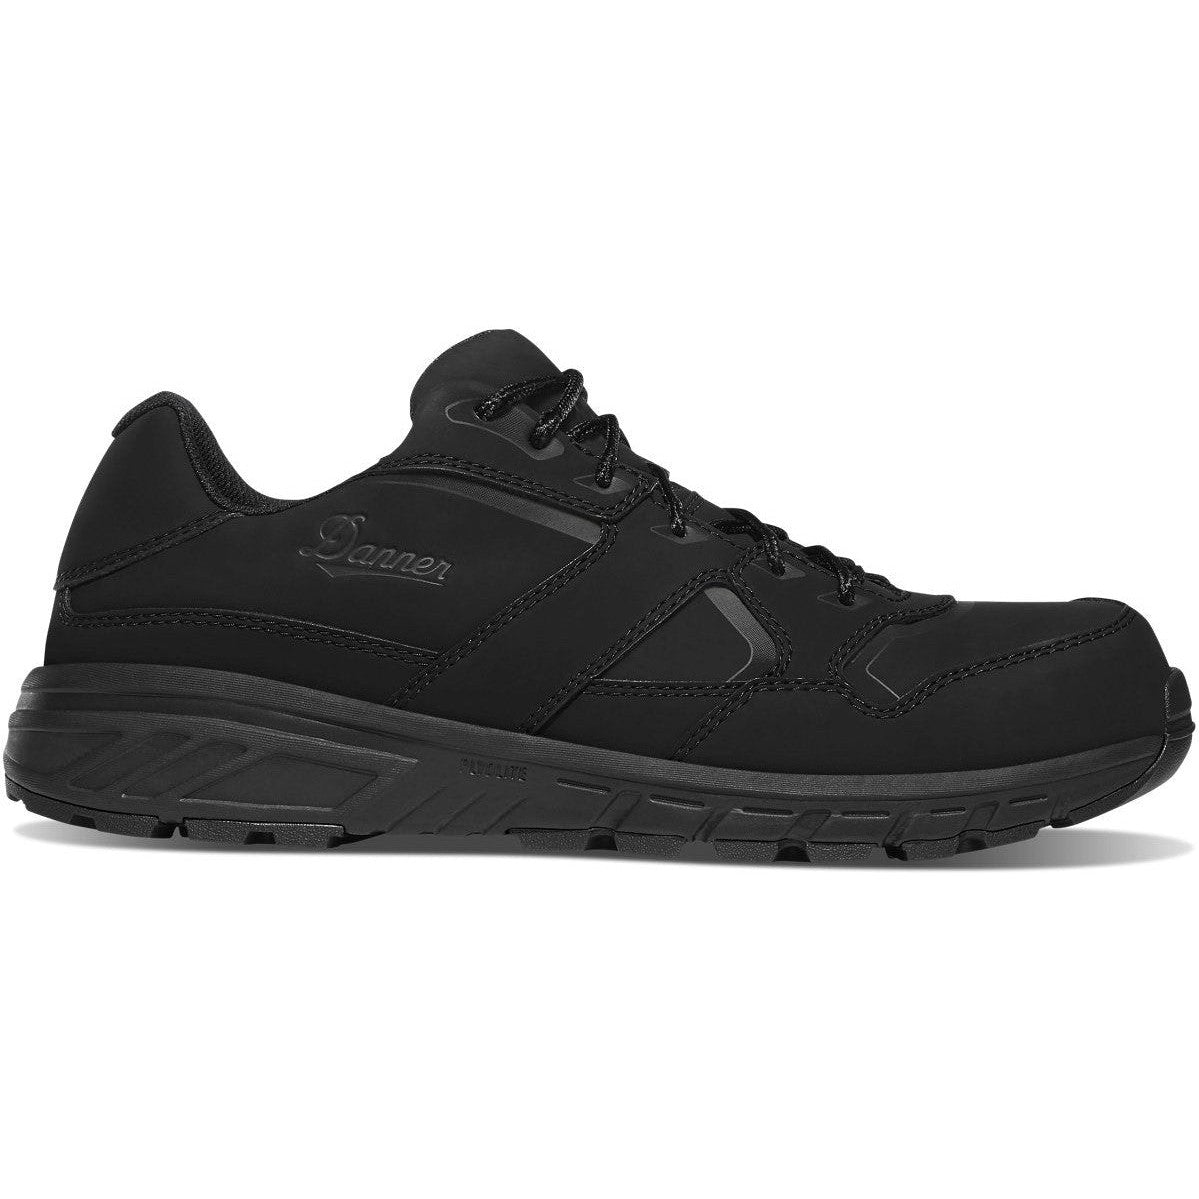 Danner Men's Run Time Evo 3" CT Slip Resistant Work Shoe-Black- 12310 7 / Medium / Black - Overlook Boots